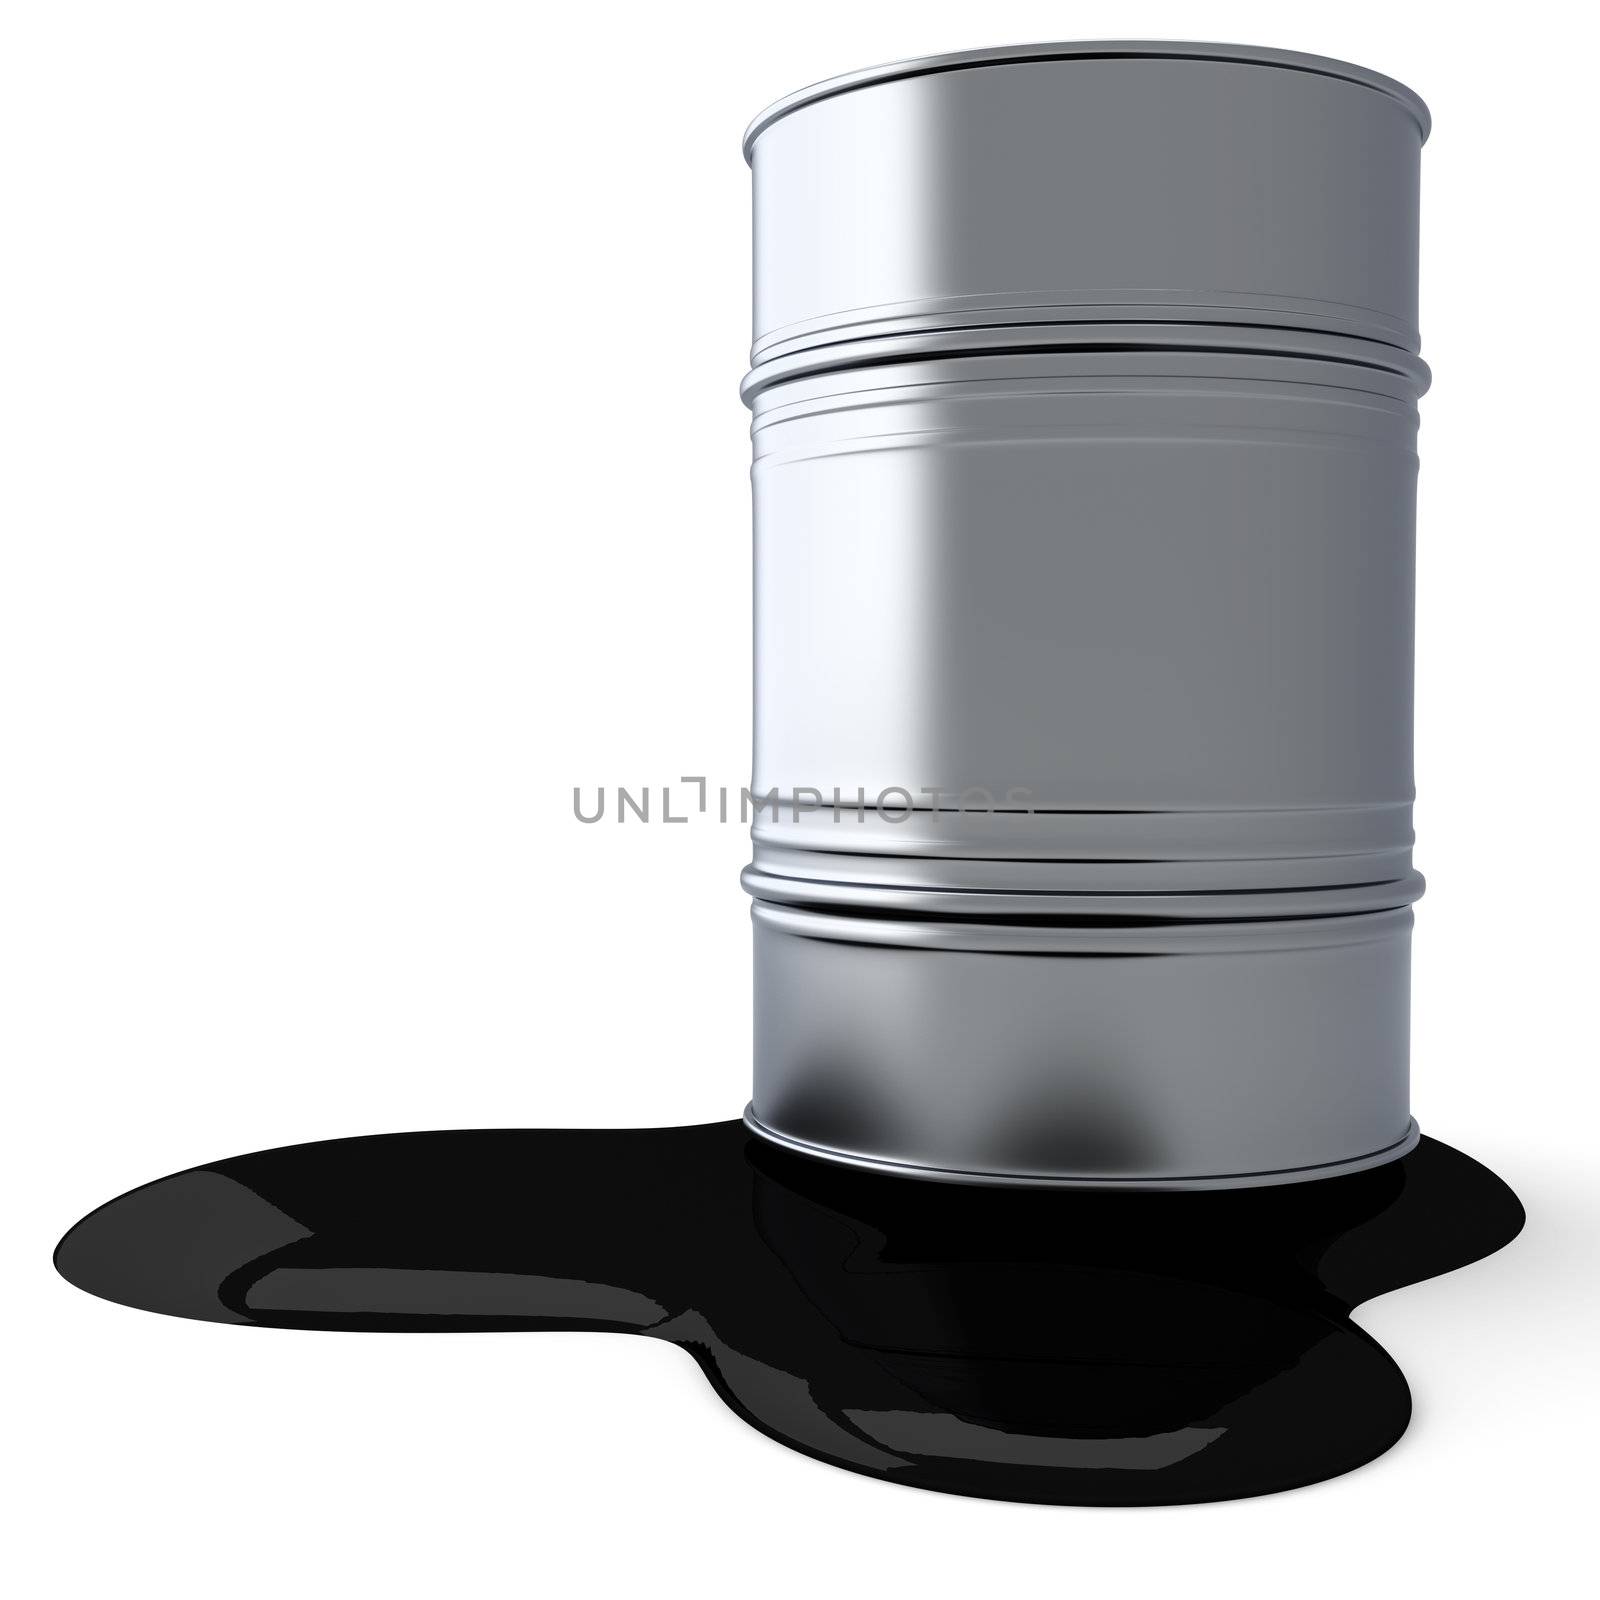 A leaking oil barrel. 3D rendered Illustration.